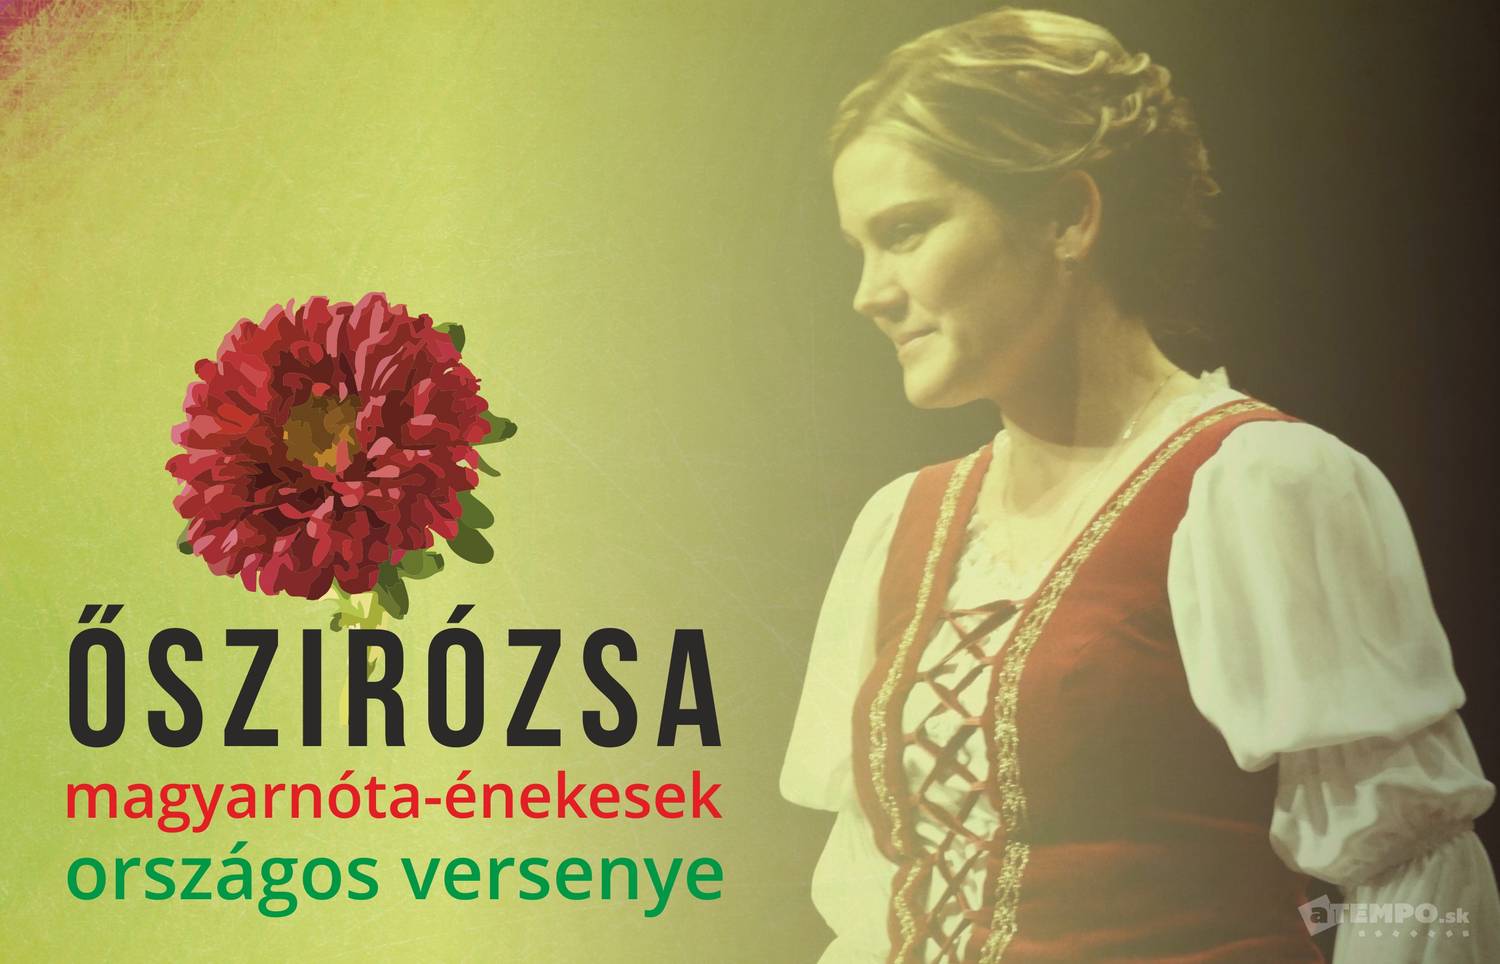 FELHÍVÁS: Őszirózsa - magyarnóta-énekesek országos versenye